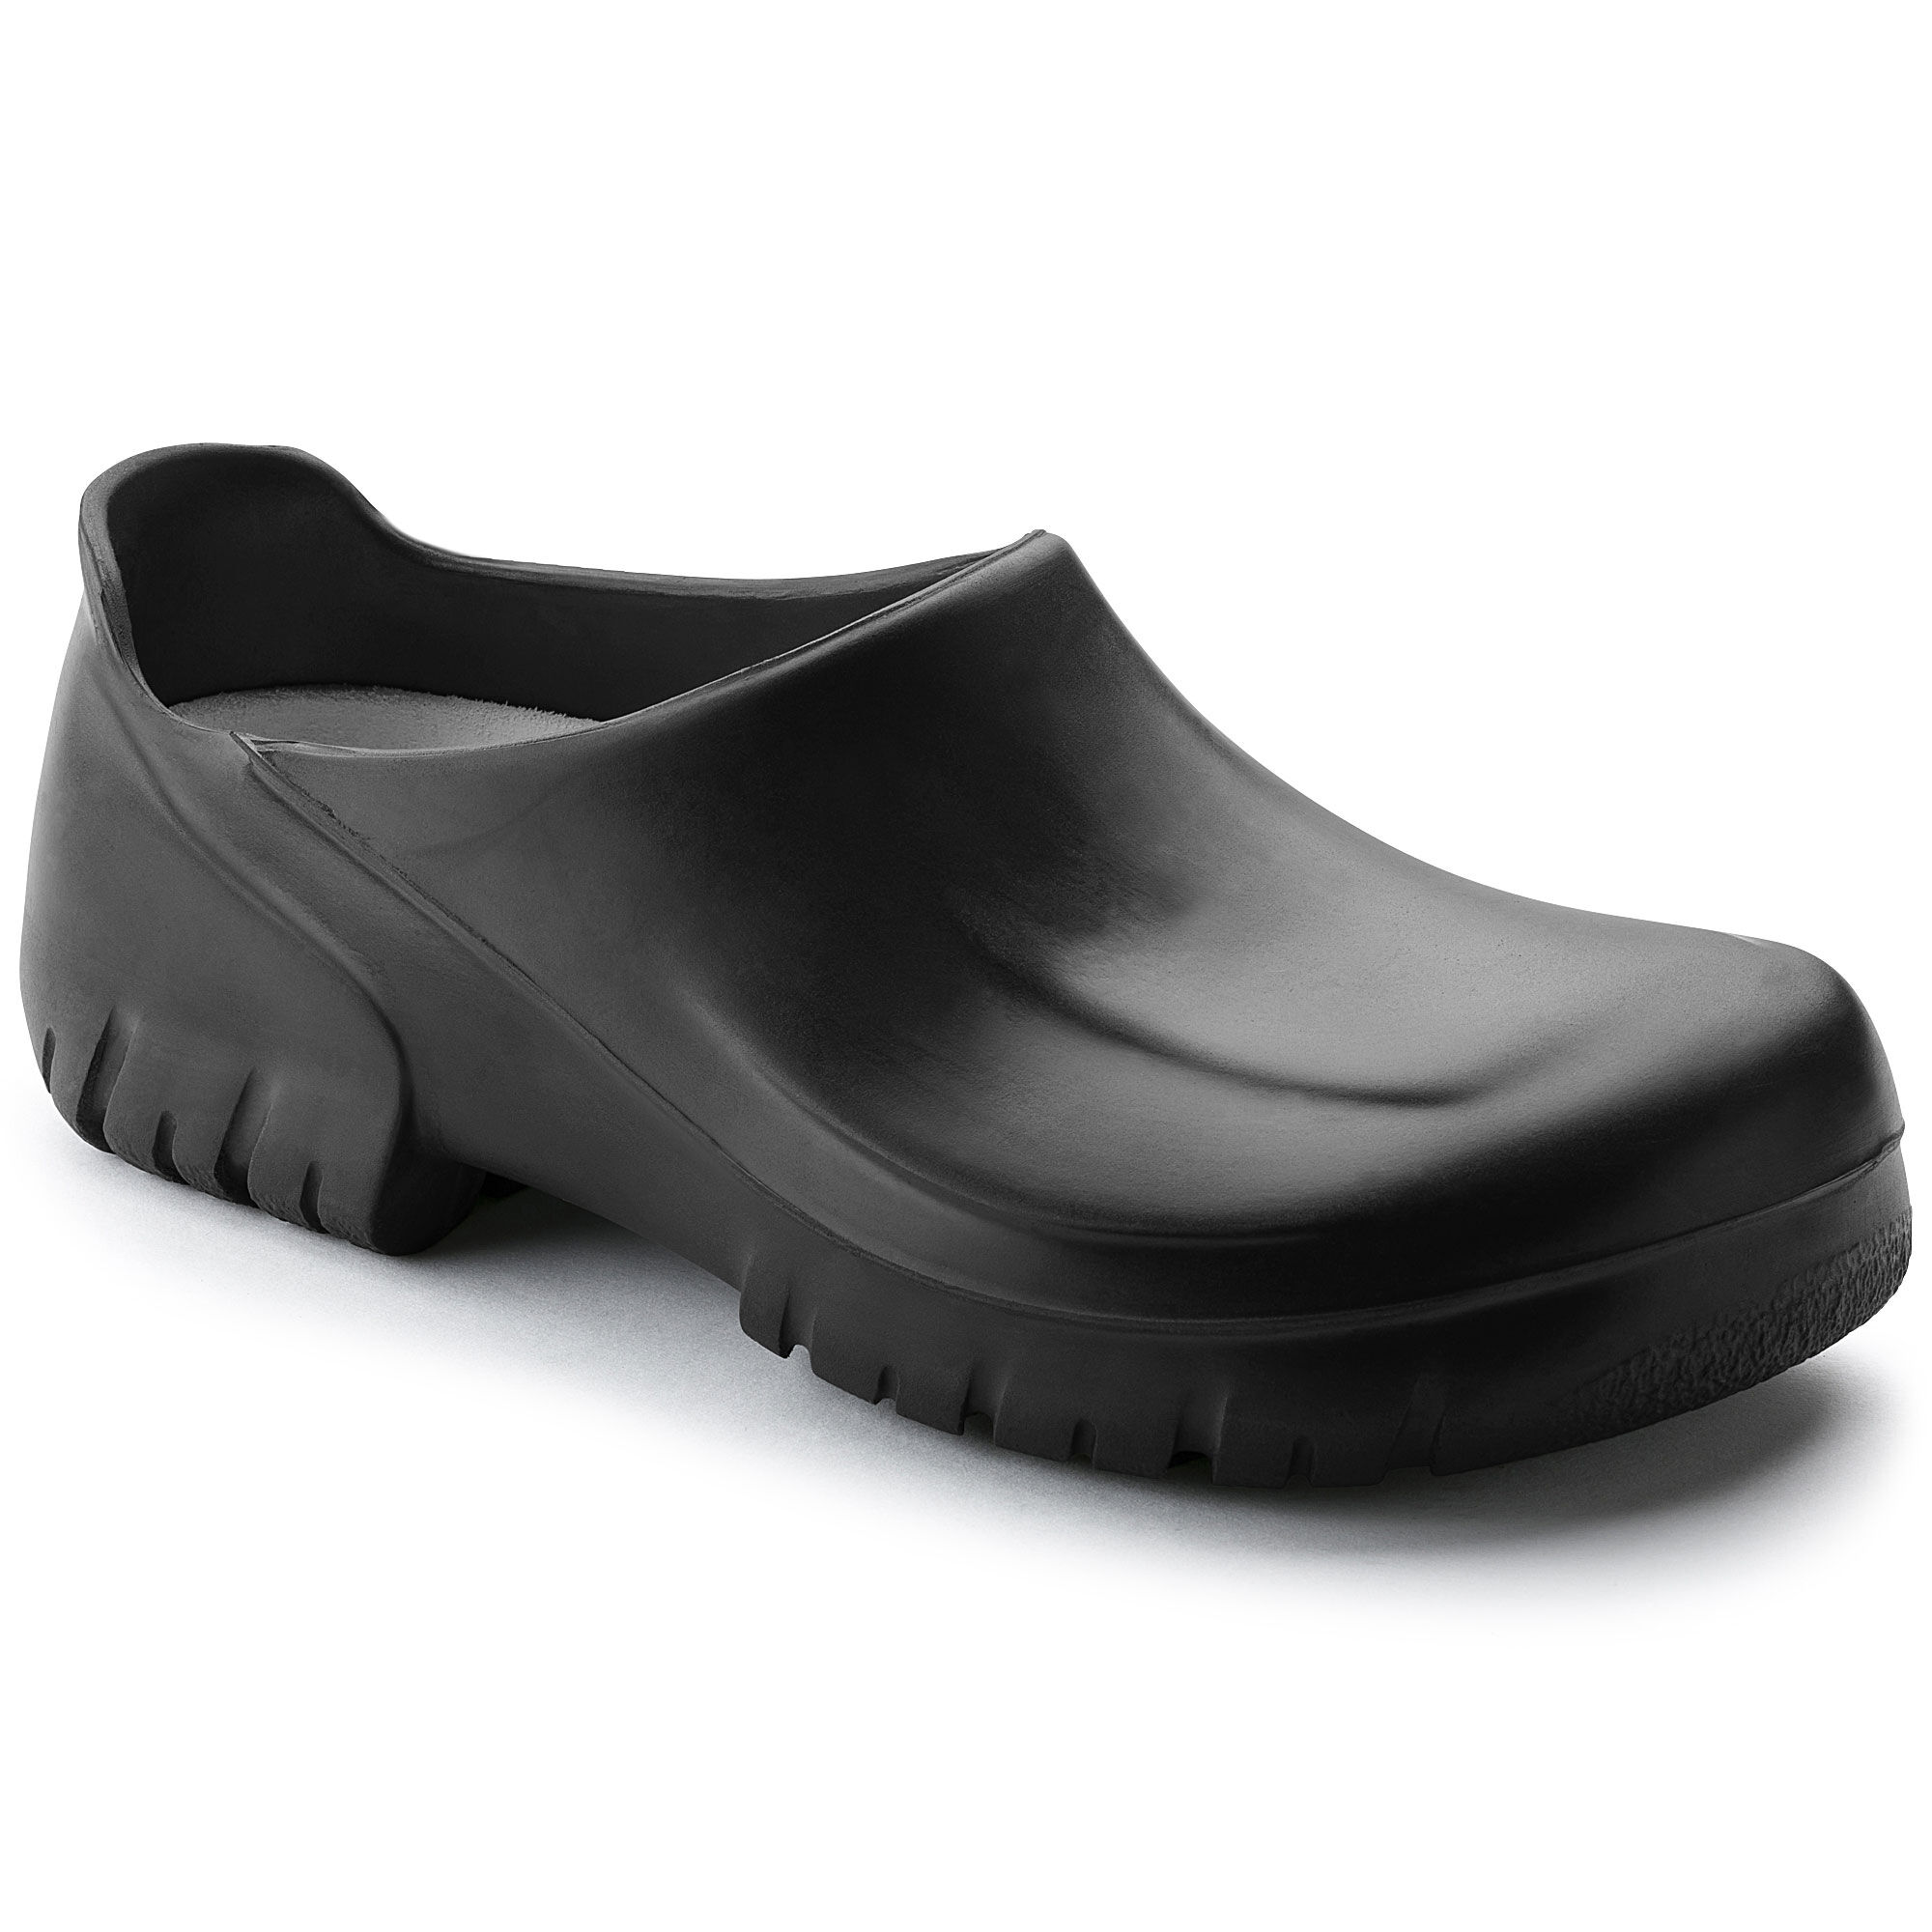 birkenstock slip resistant shoes